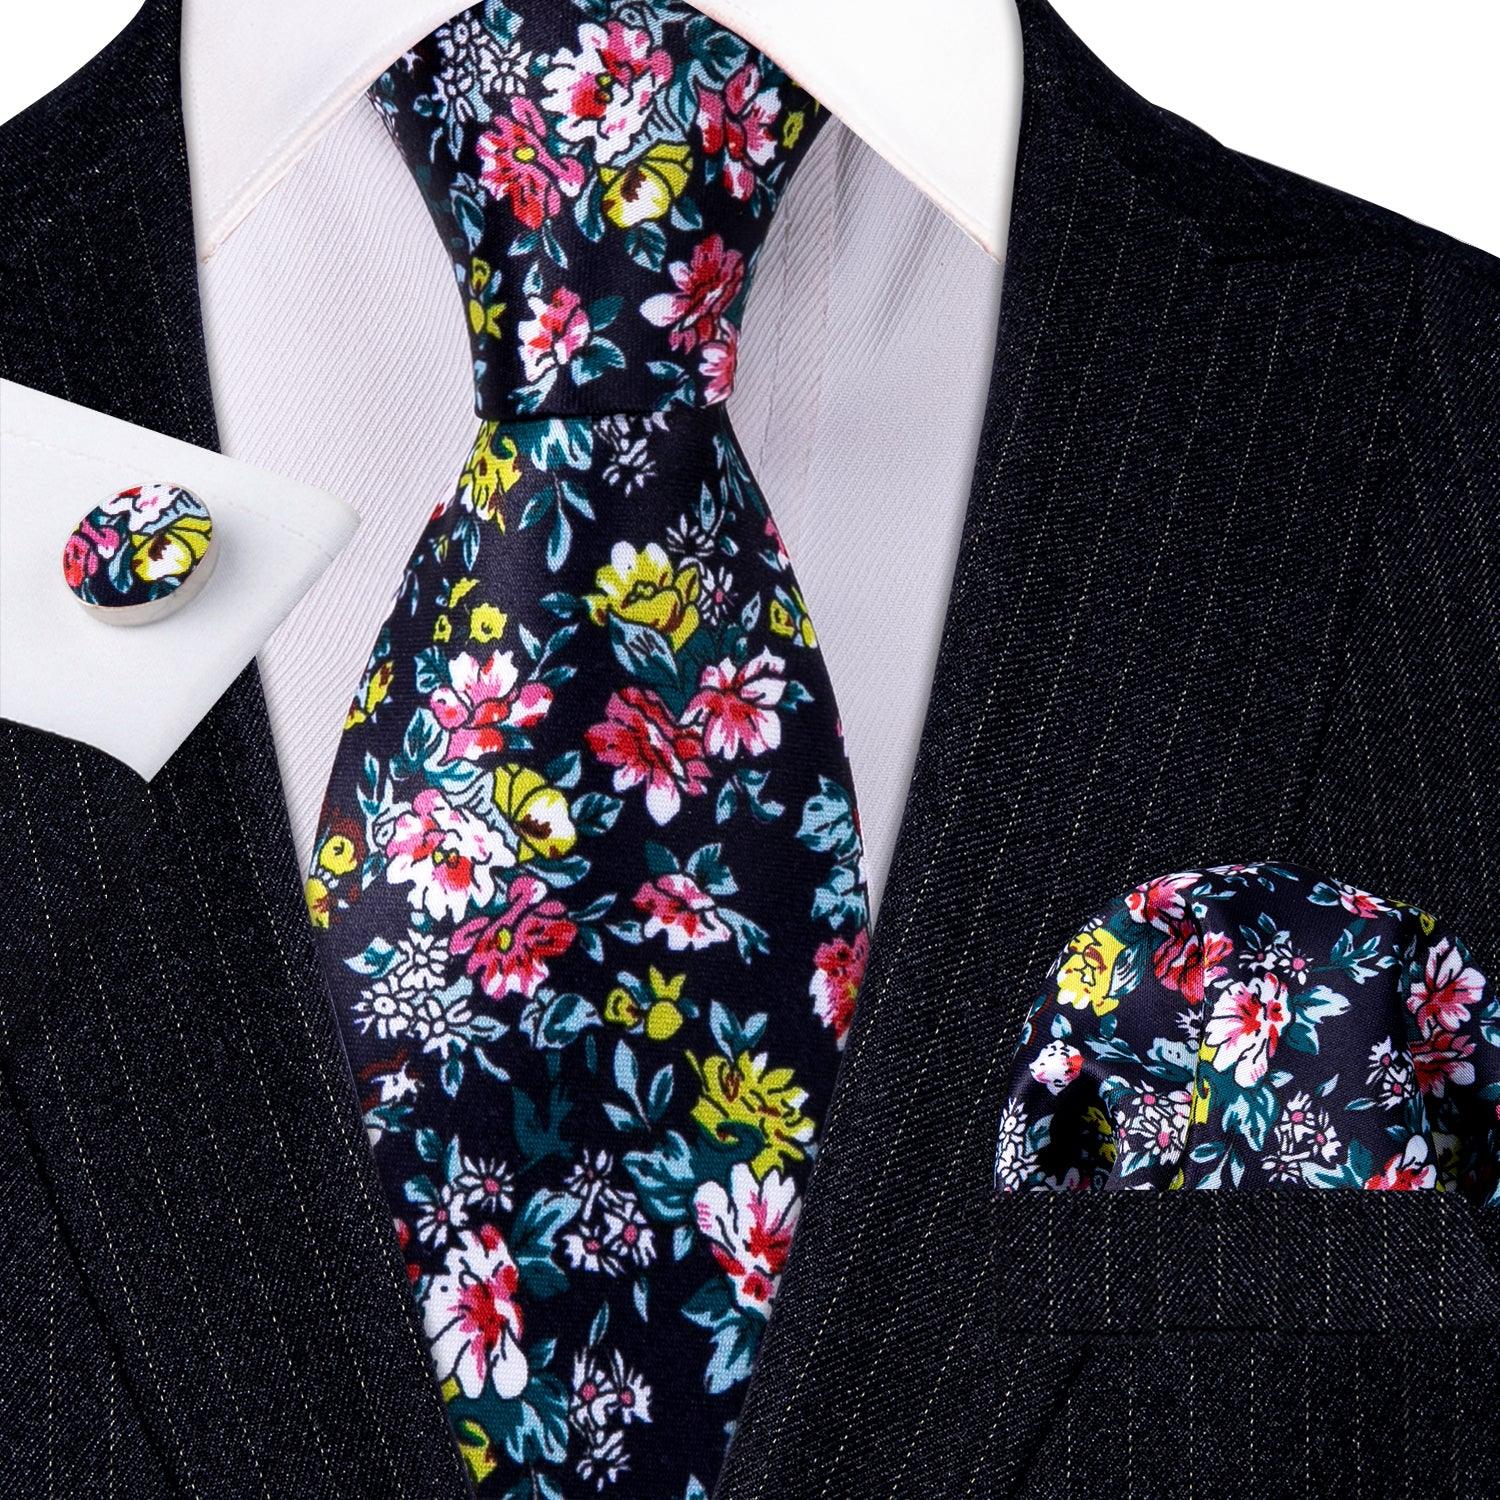 Black Print Floral Silk Tie Pocket Square Cufflink Set - STYLETIE